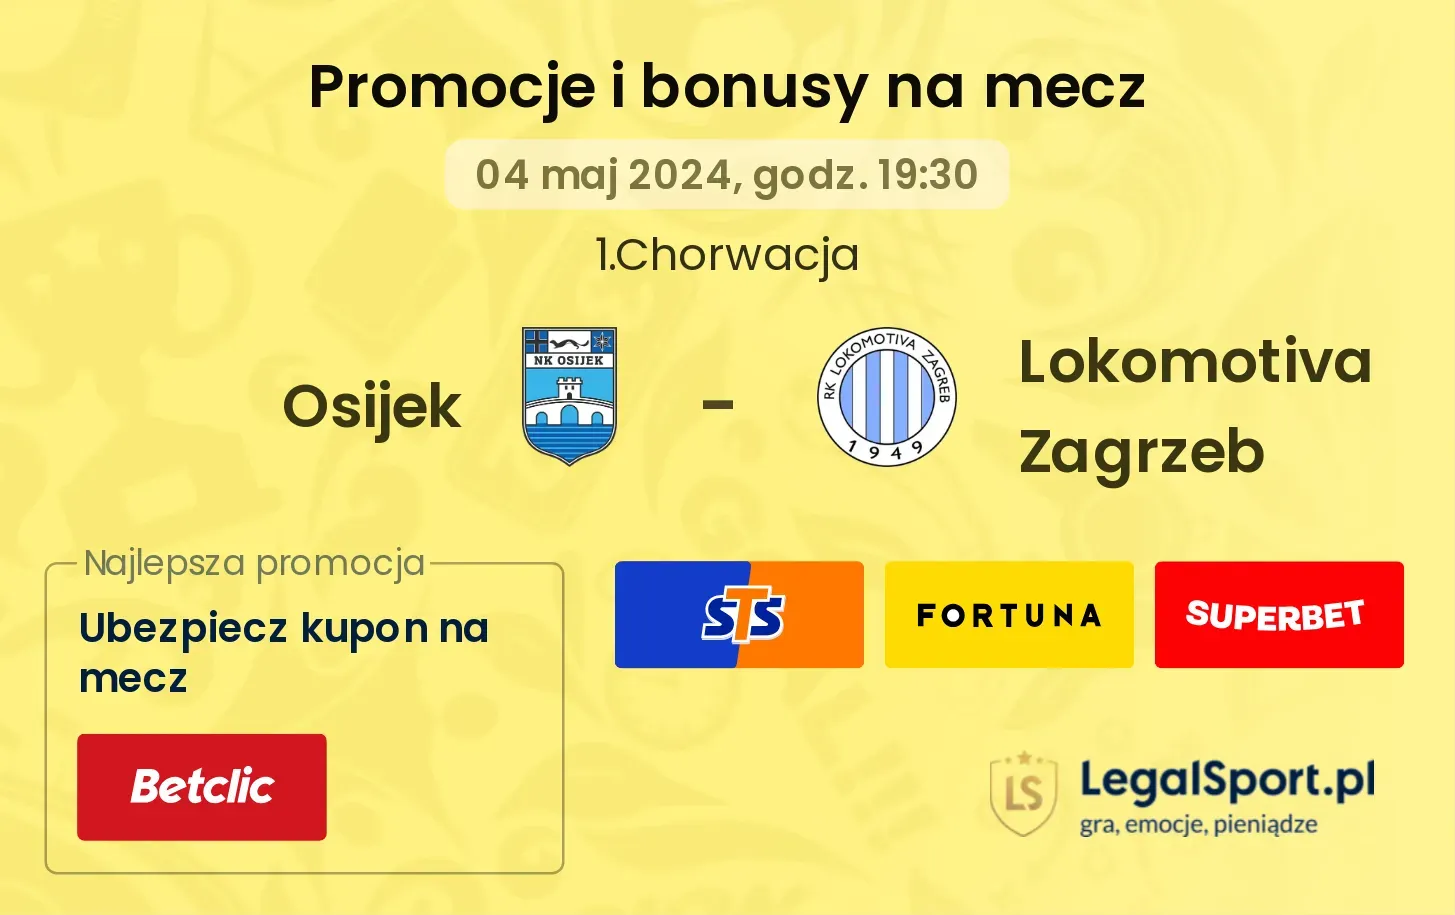 Osijek - Lokomotiva Zagrzeb promocje bonusy na mecz